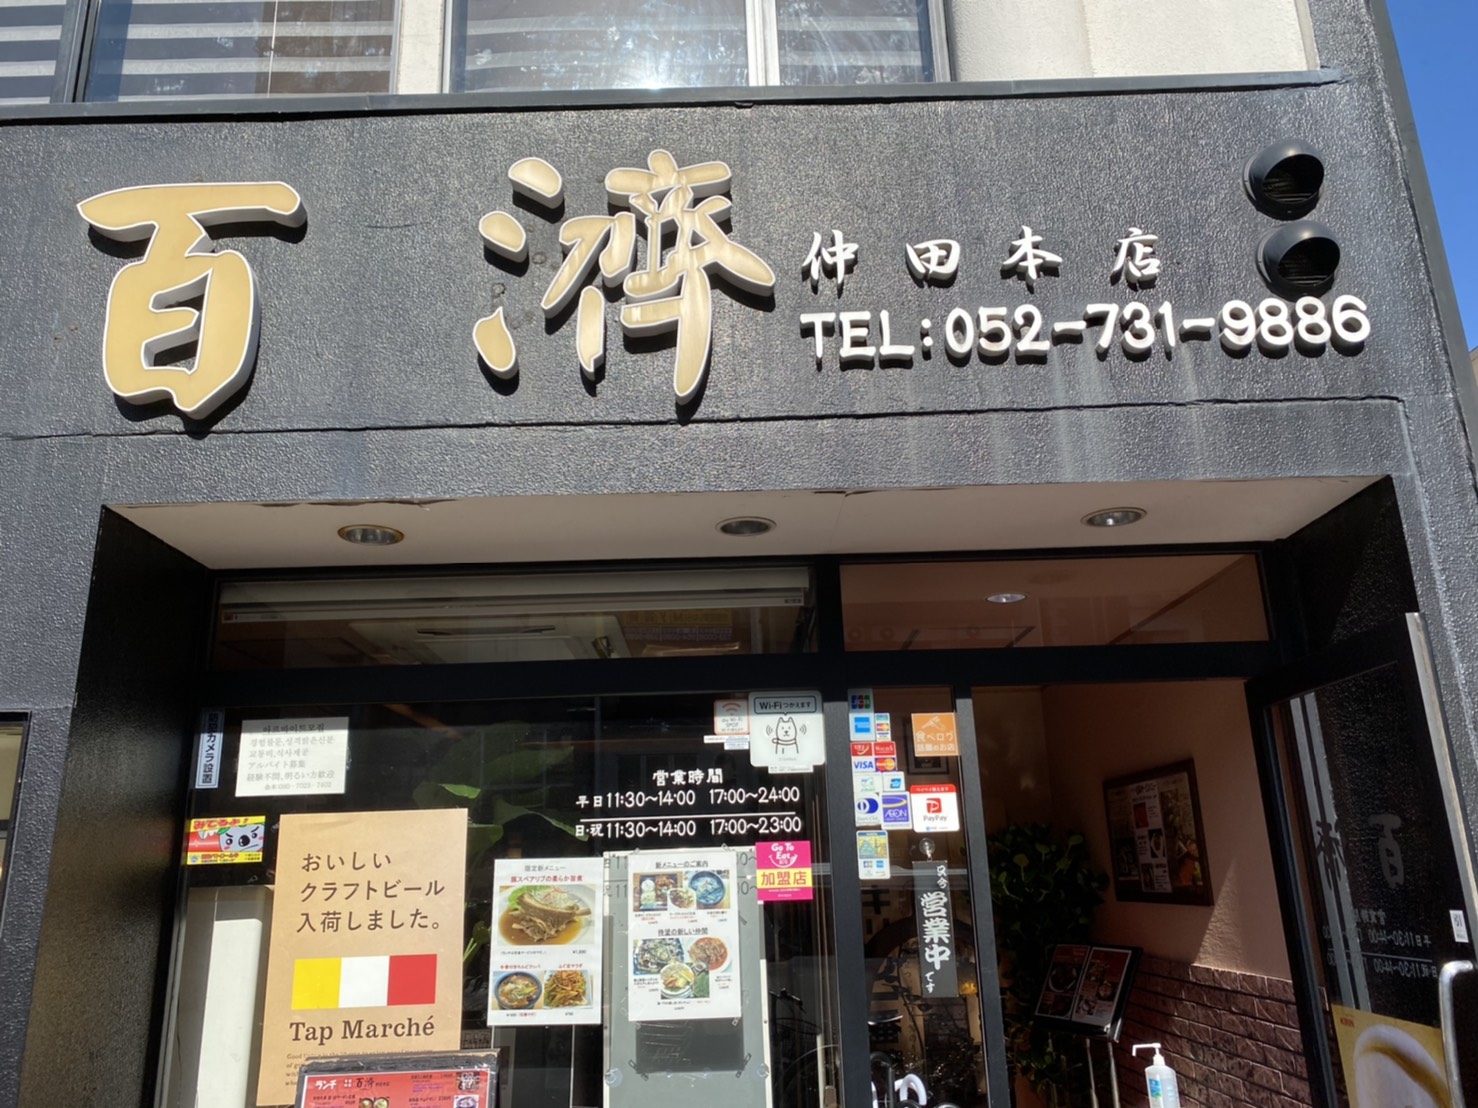 今池の韓国料理店 百済 ペクチェ は本場さながらの美味しい韓国料理がいただける韓国料理専門店